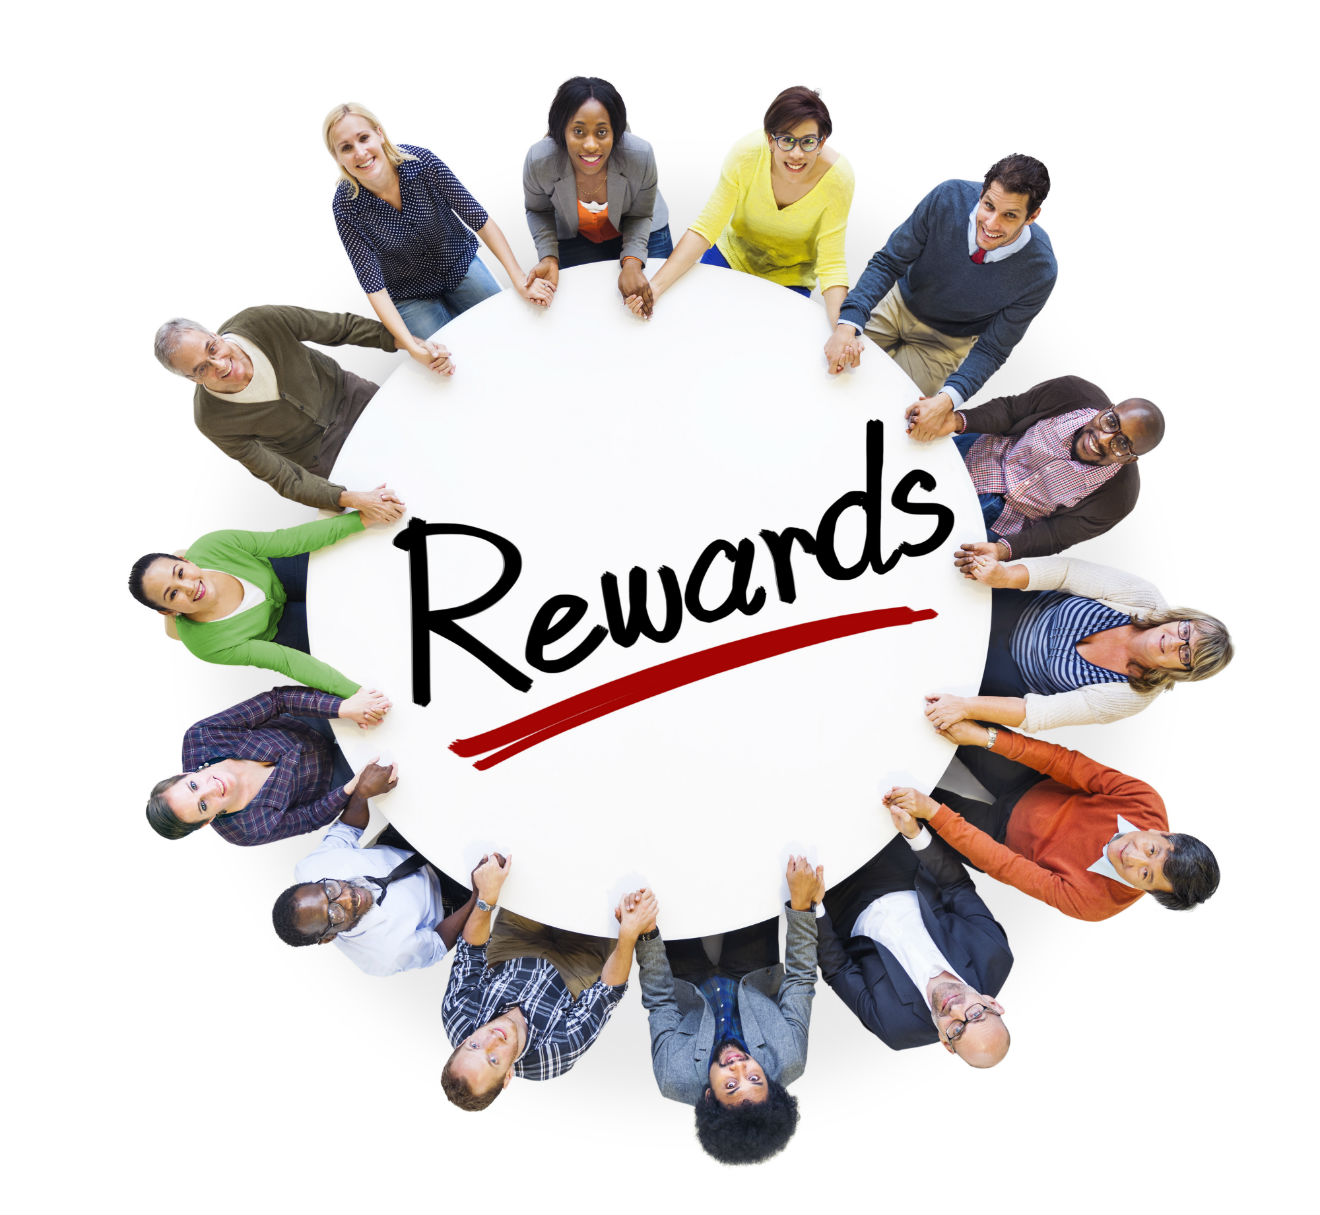 incentive-plan-team-rewards.jpg